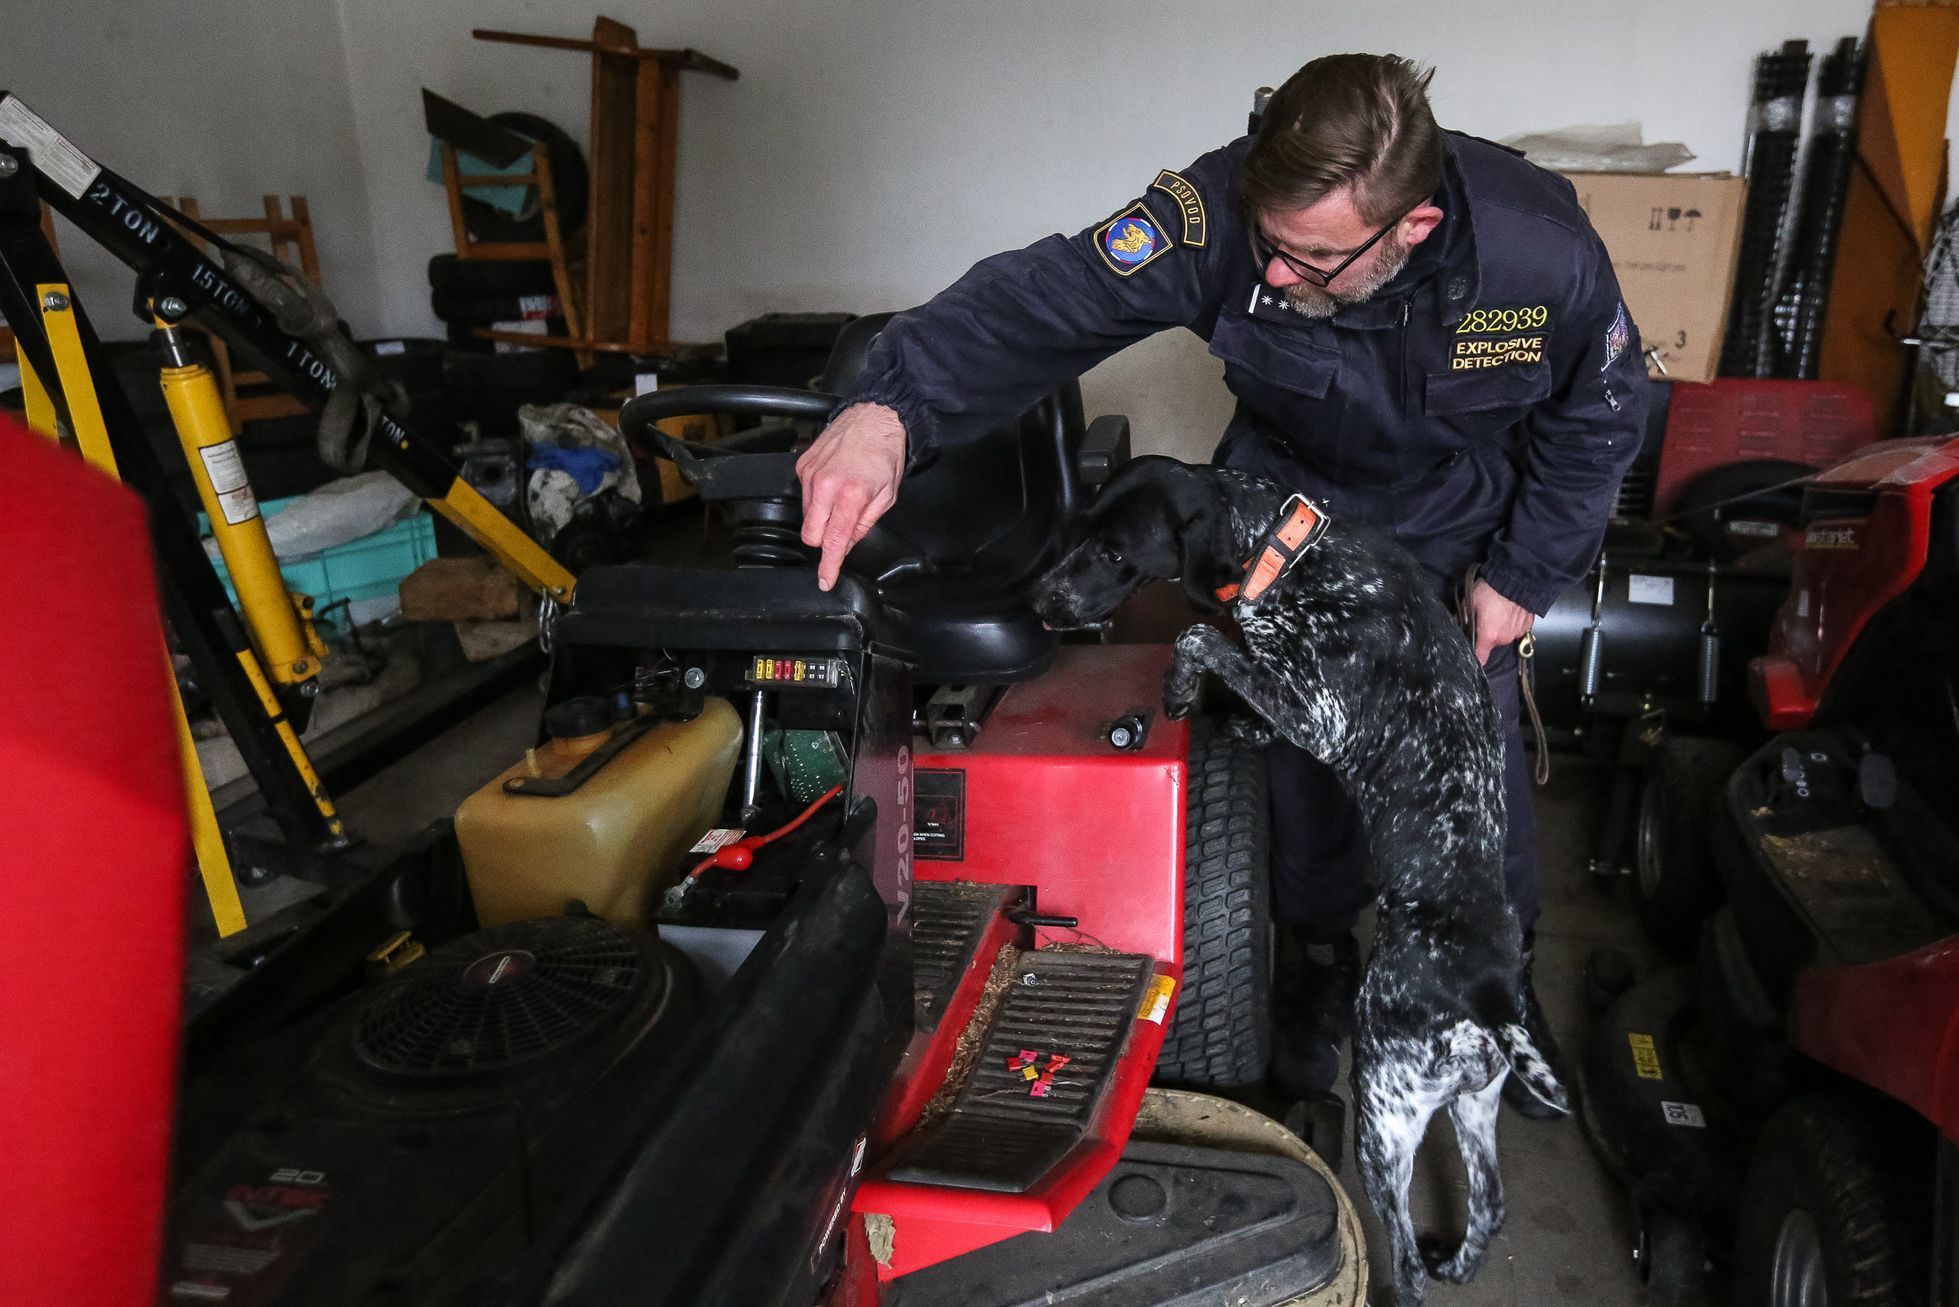 Výcvik policejních psů na hledání výbušnin, tzv. pyropsů